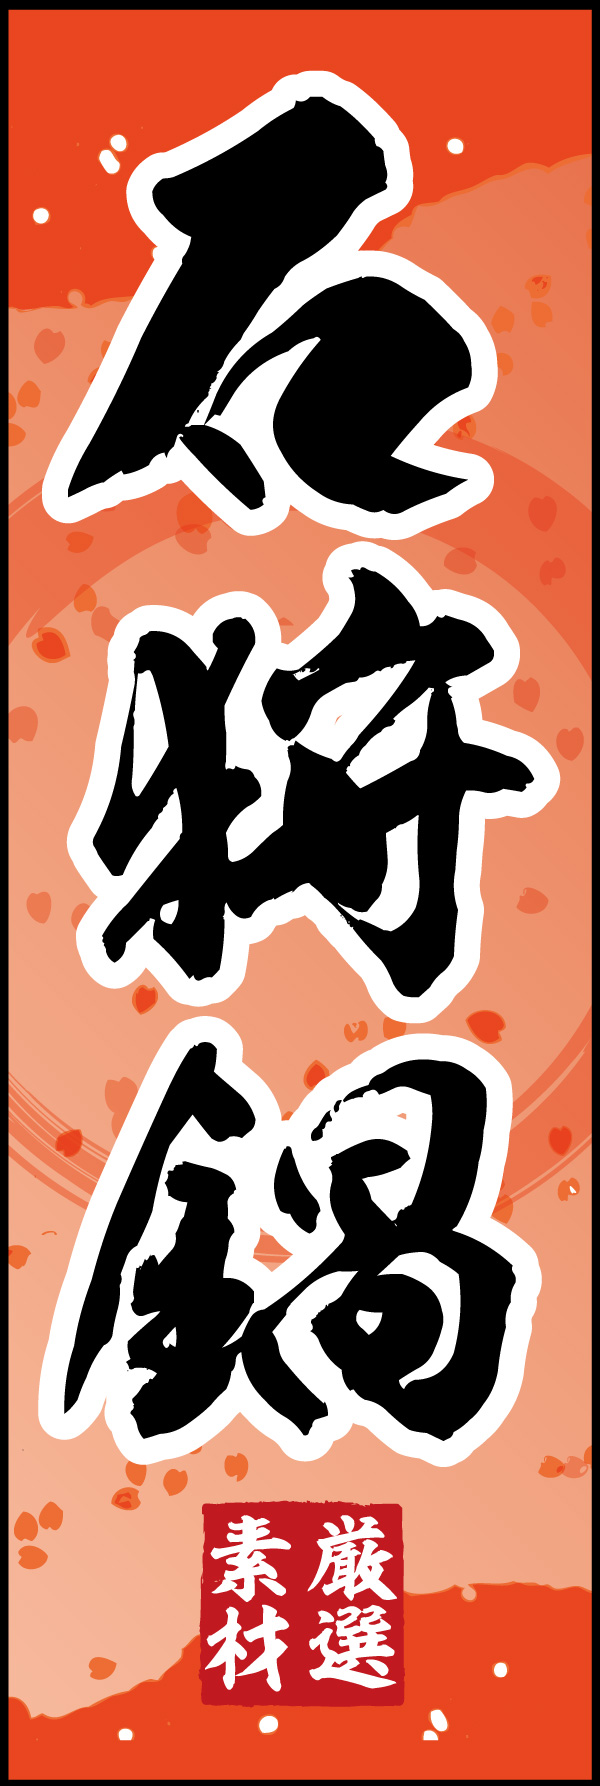 石狩鍋 05「石狩鍋」ののぼりです。シャケの切り身色をイメージした背景をベースに、筆文字で「和」のイメージを強調してみました。(Y.M) 